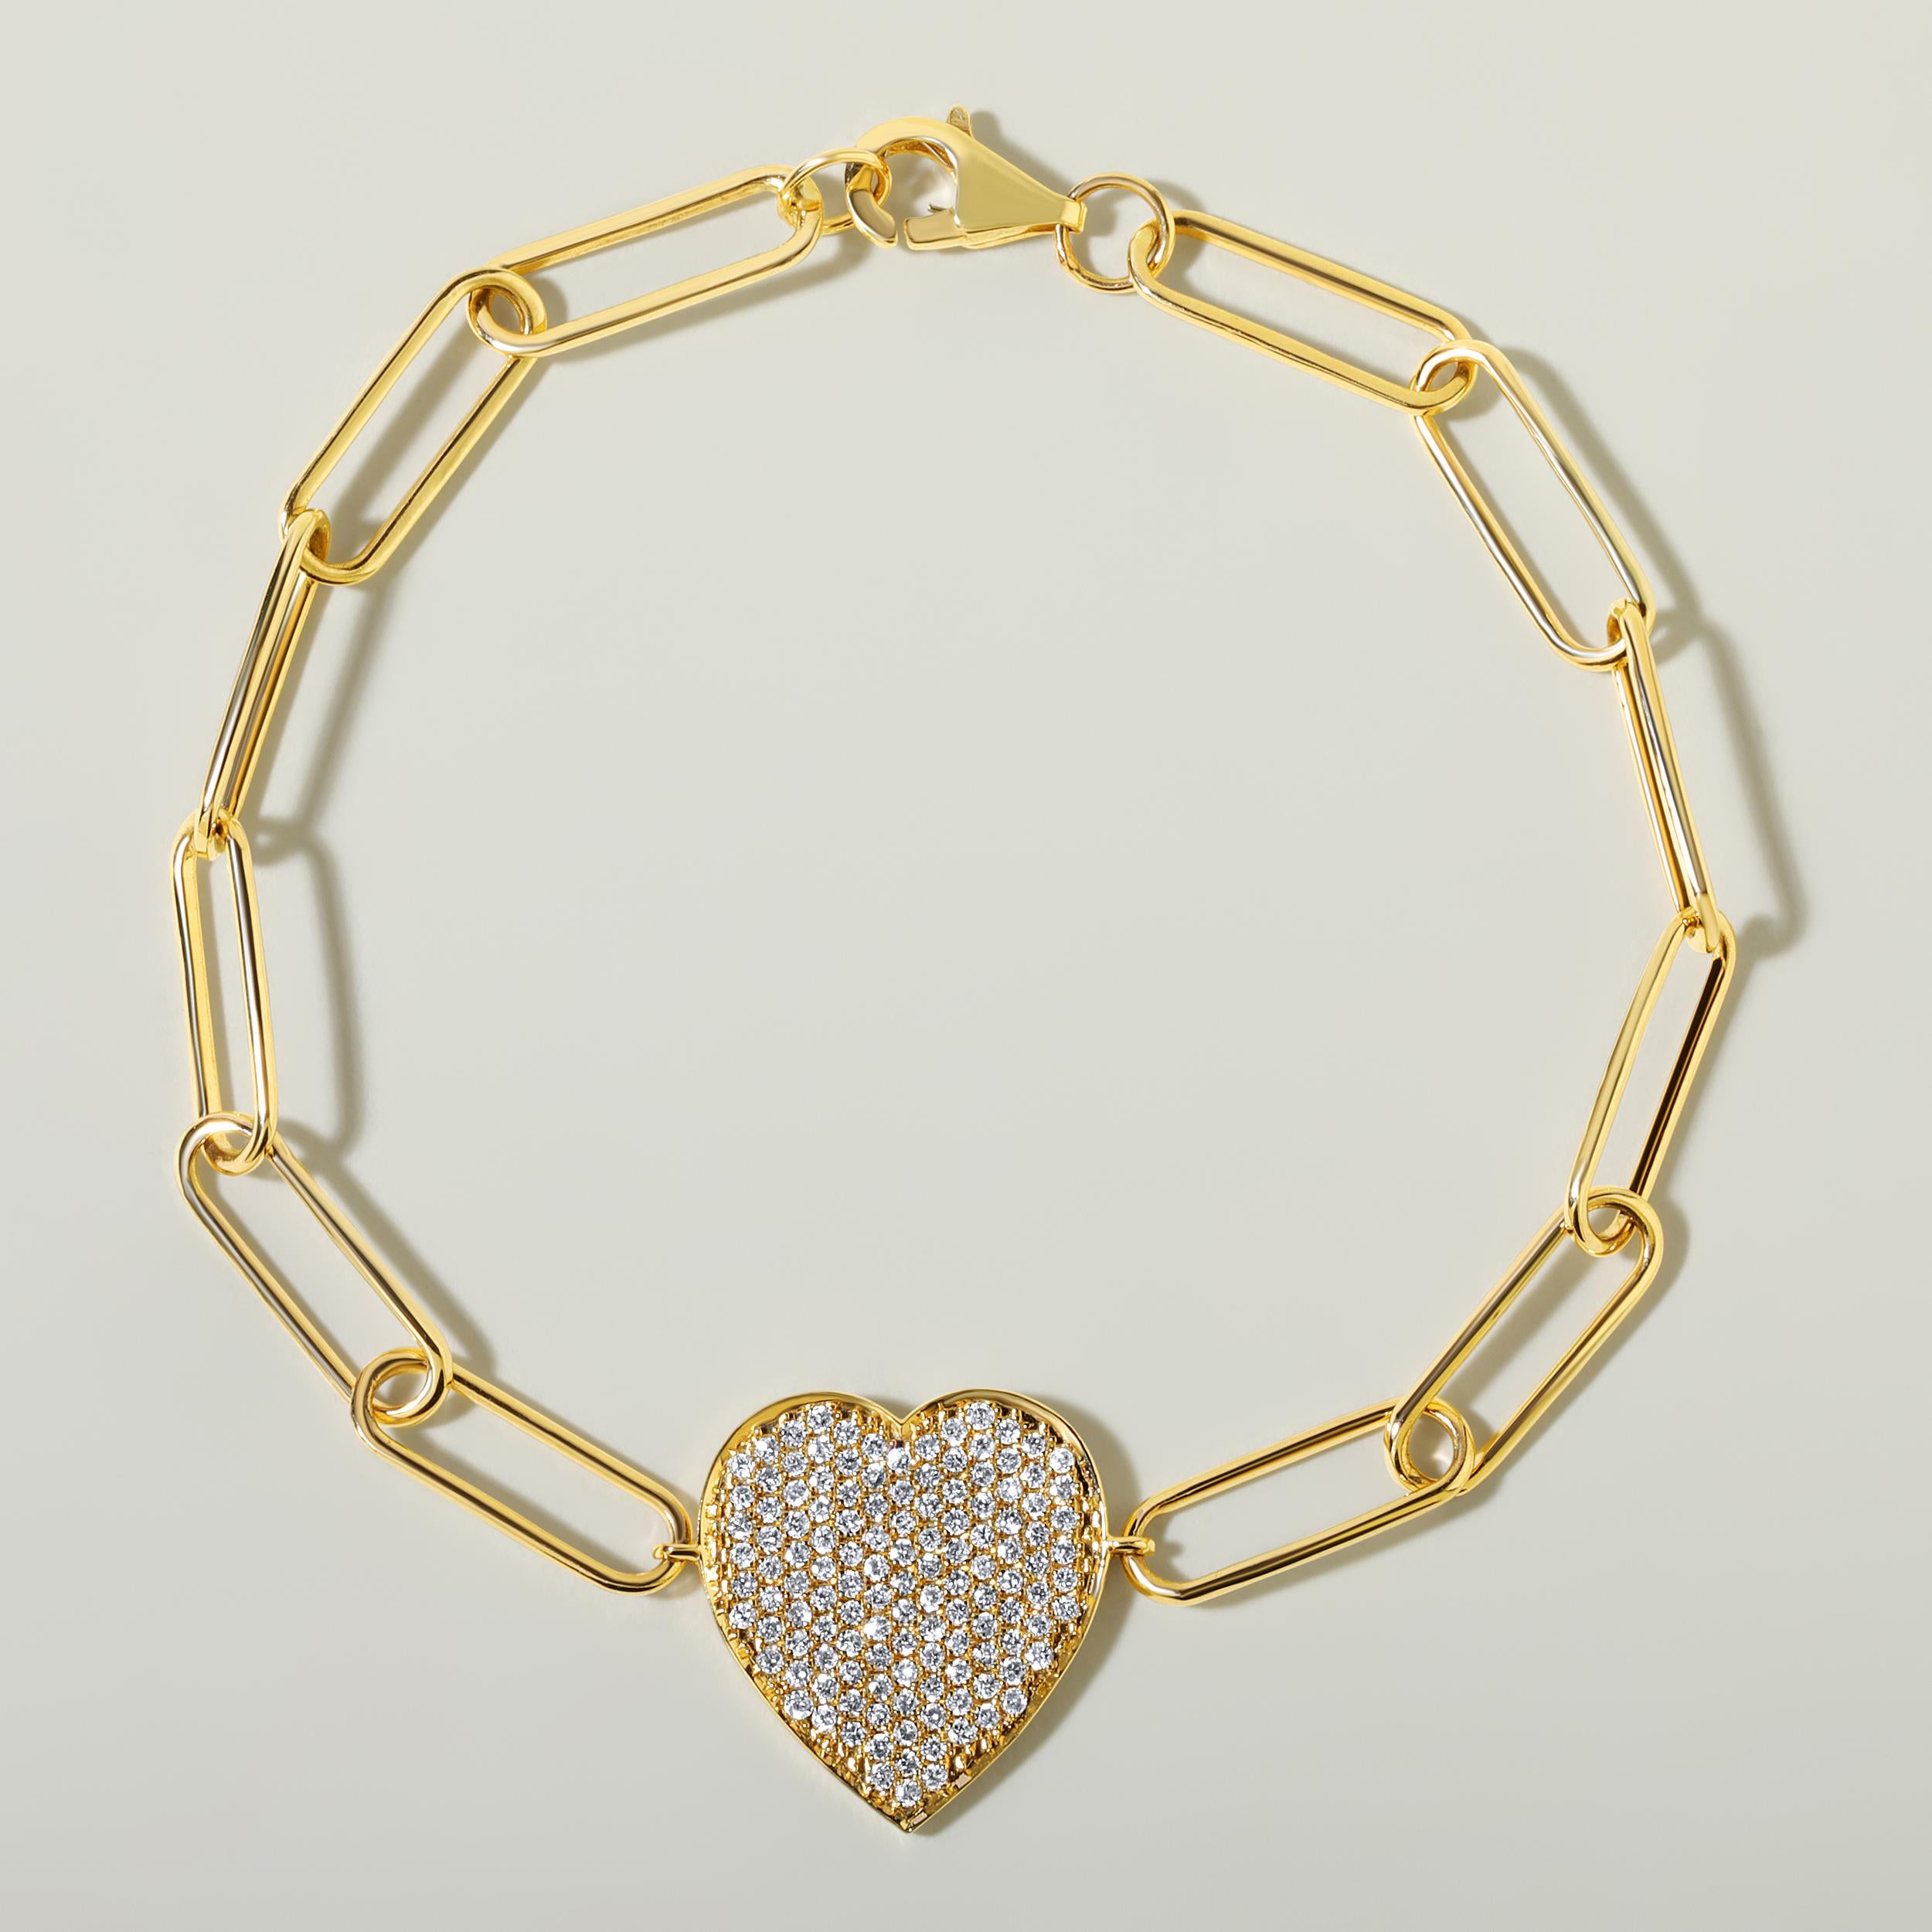 Fabriqué en or jaune 14 carats de 7,07 grammes, le bracelet contient 0,61 pierres de diamants ronds naturels d'un total de 0,61 carat de couleur E-F et de pureté SI. La longueur du bracelet est de 7 pouces.
UNE ESSENCE CONTEMPORAINE ET INTEMPORELLE